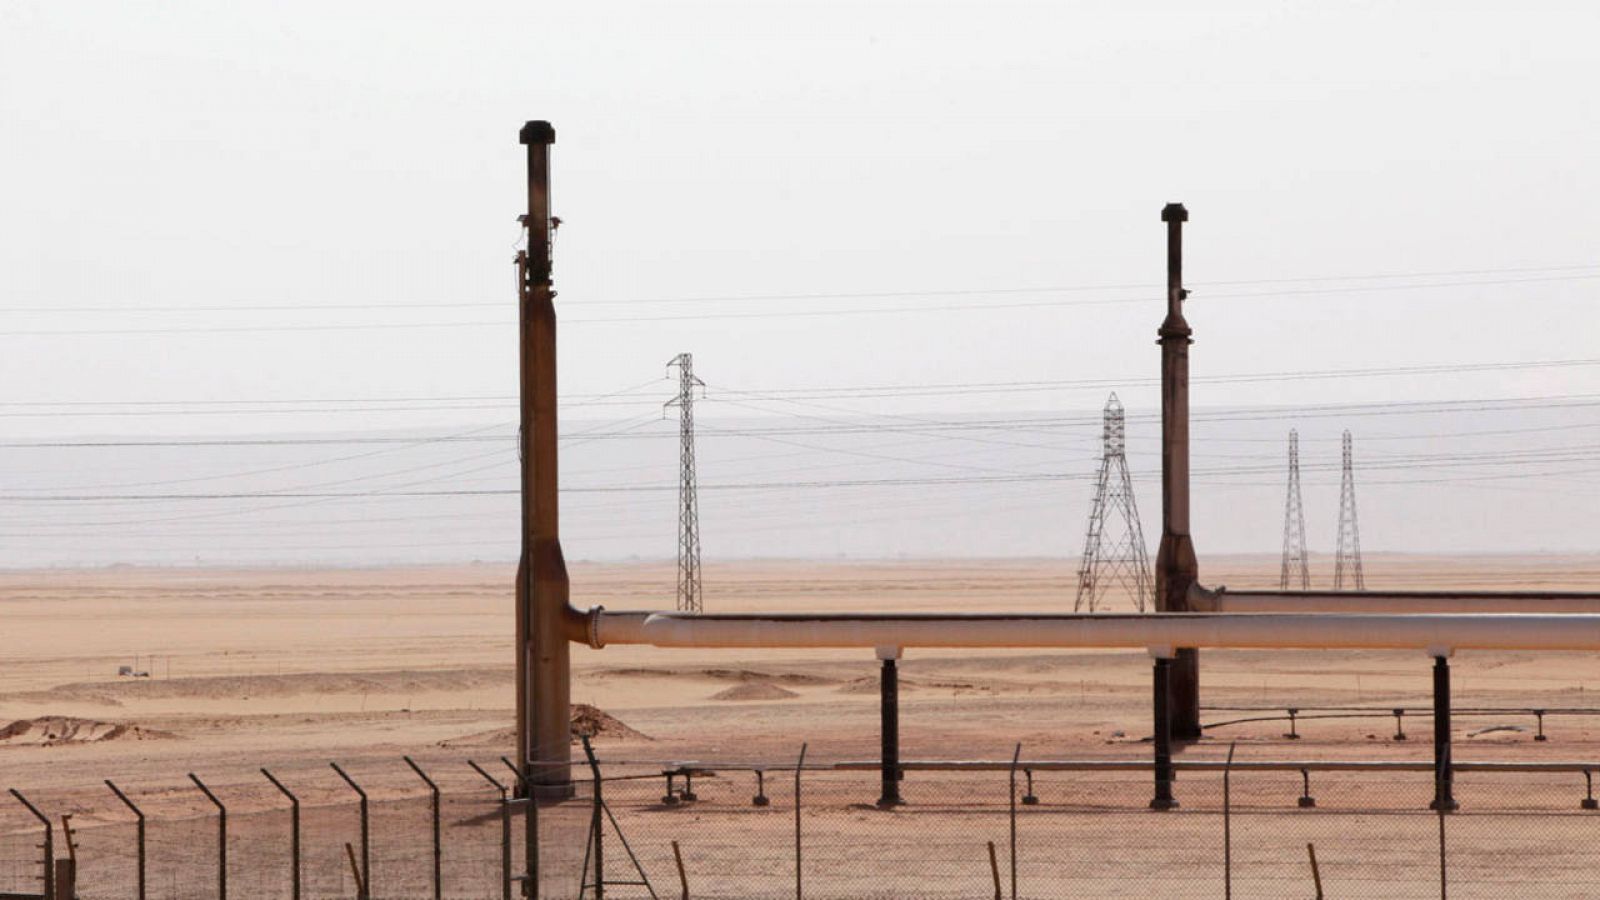 Campo petrolífero en Libia